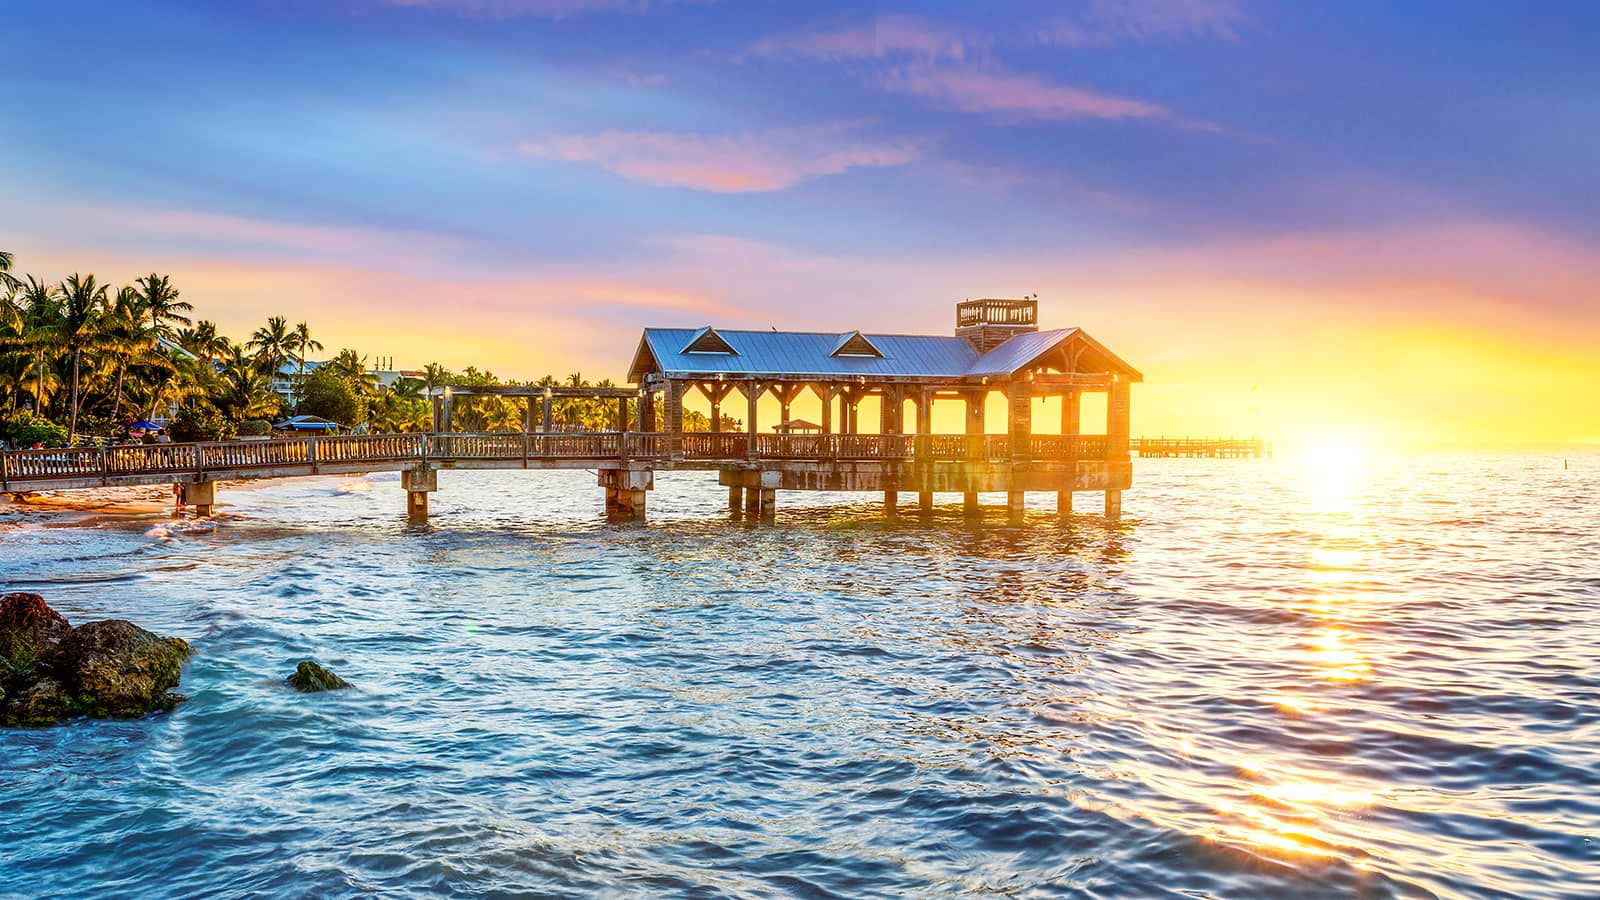 Key West, a Virgin Voyages destination.